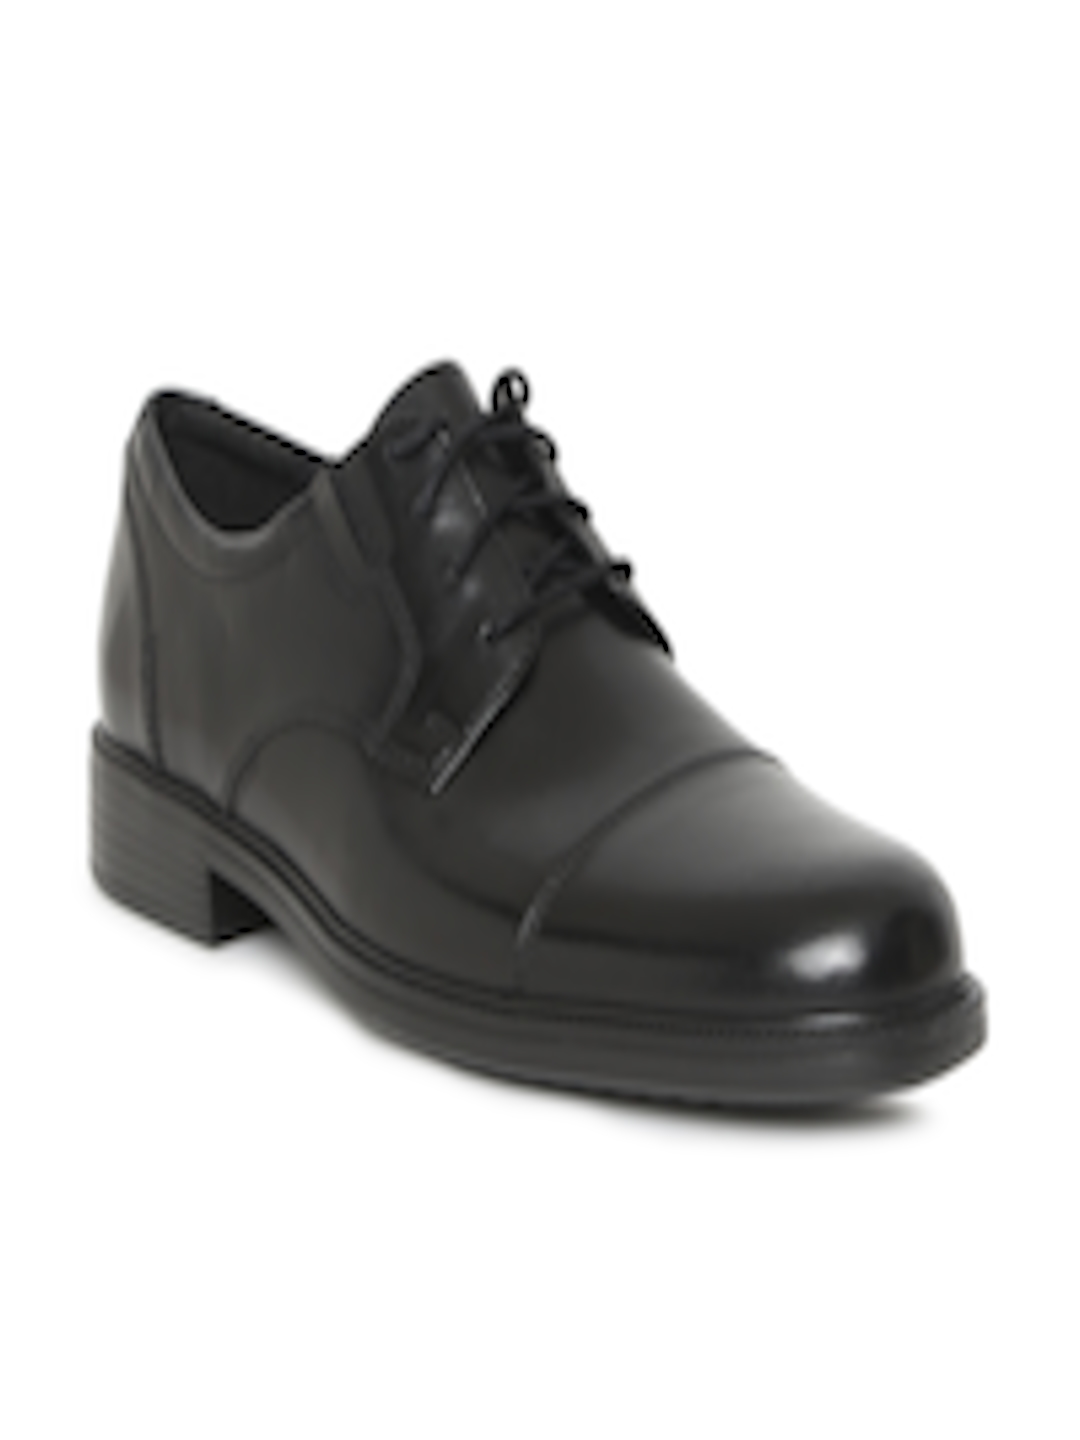 Buy Clarks Men Black Leather Formal Bardwell Limit Derby Shoes - Formal ...